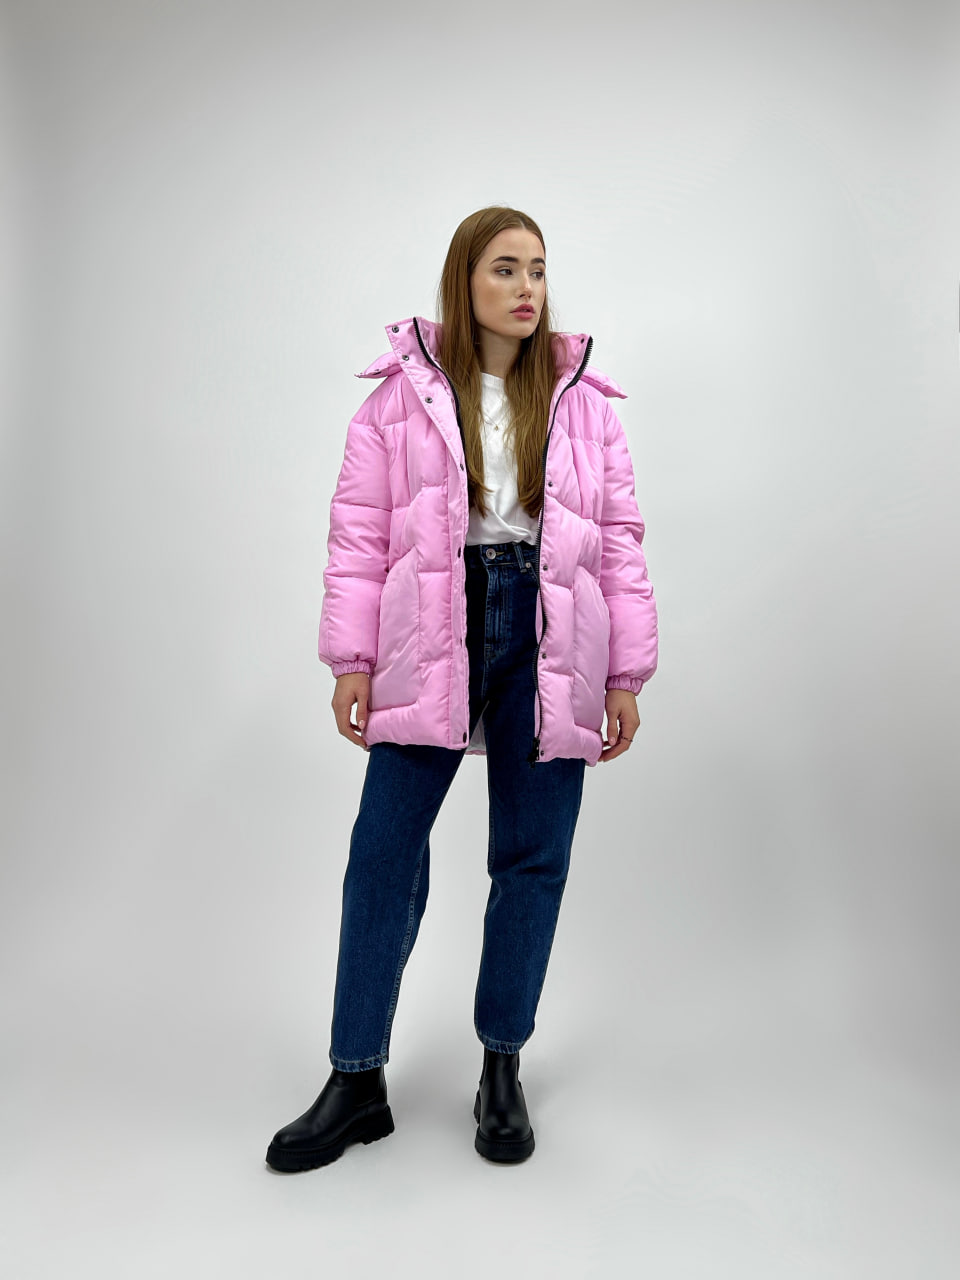 Женская зимняя куртка-пуховик Reload Elly розовый/ Зимний короткий пуховик оверсайз стильный теплый - Фото 1